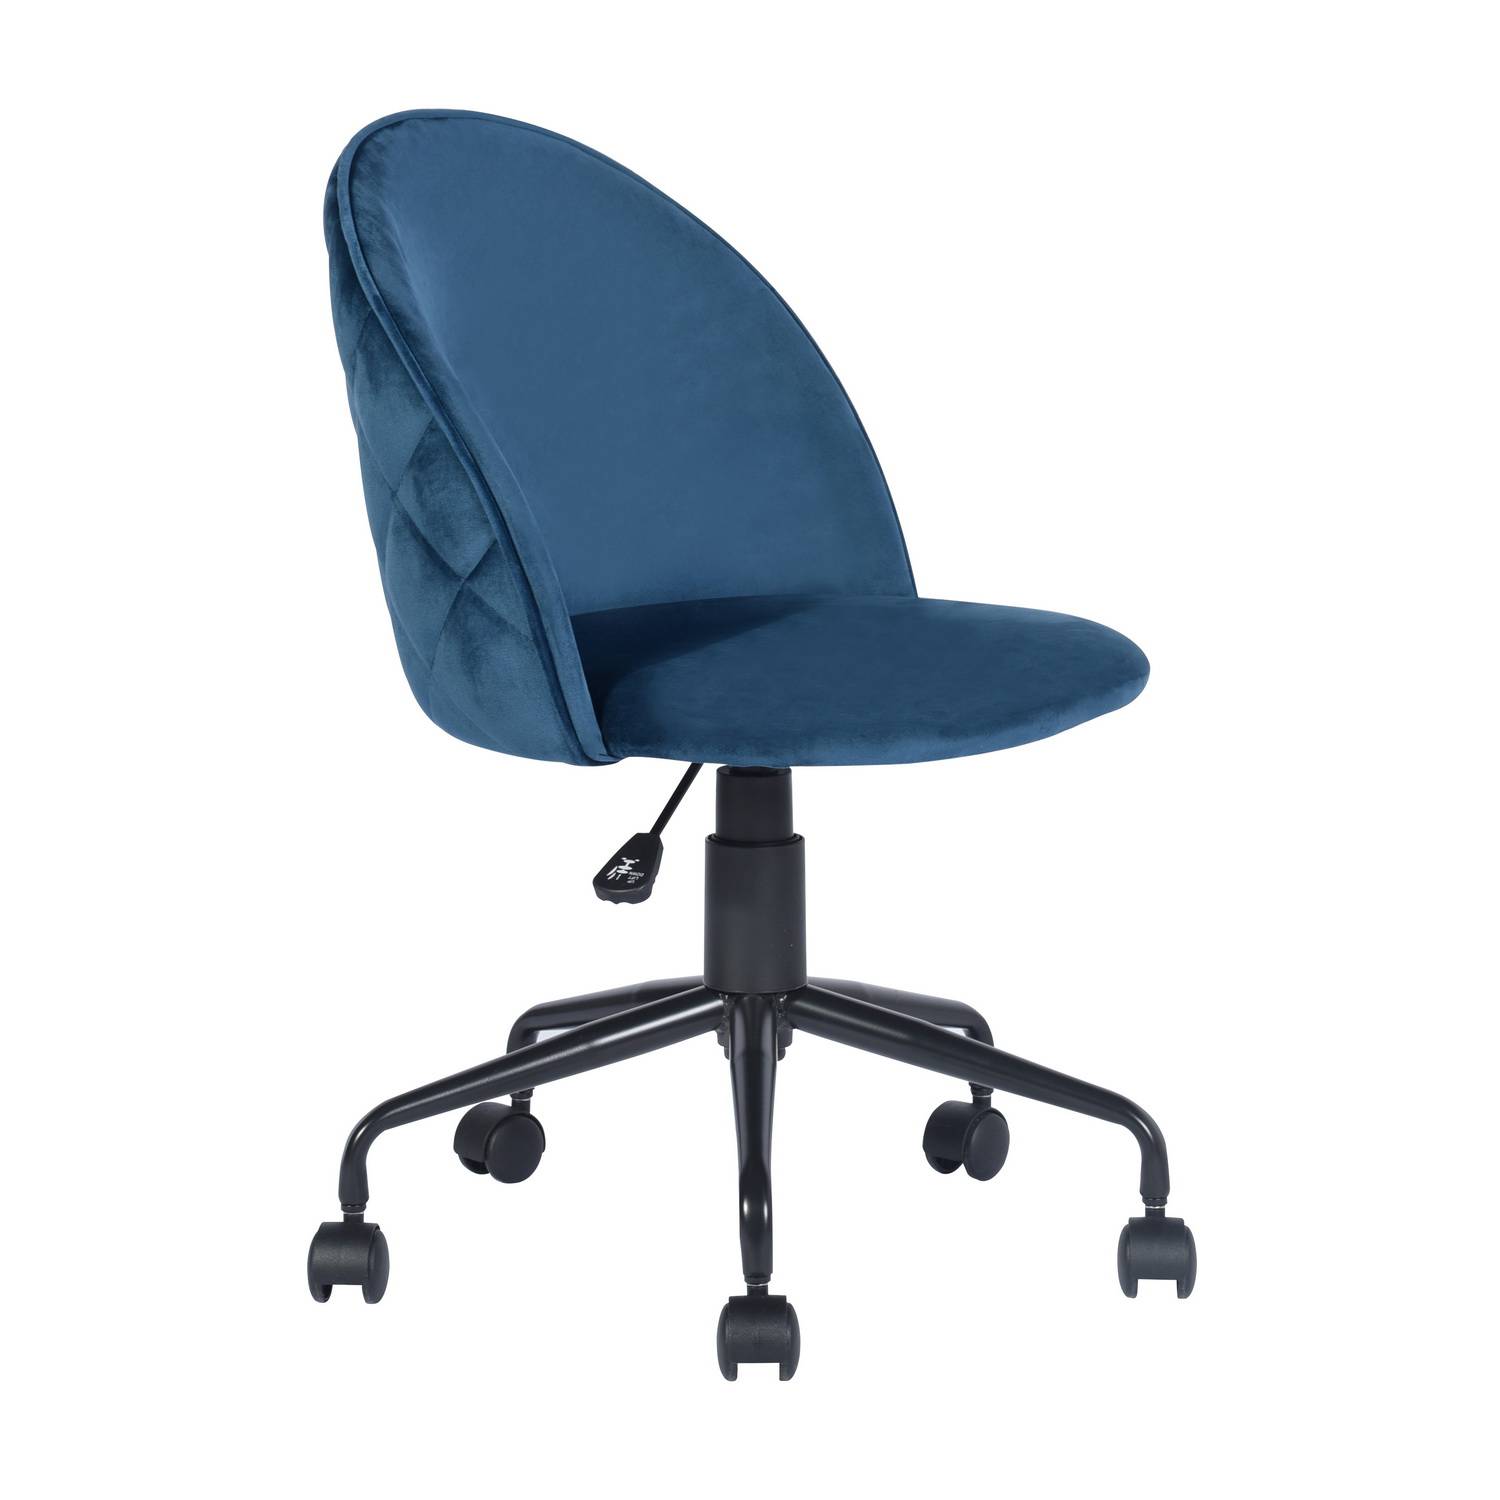 Silla escritorio Gica azul - Muebles Polque. Tienda de Muebles en